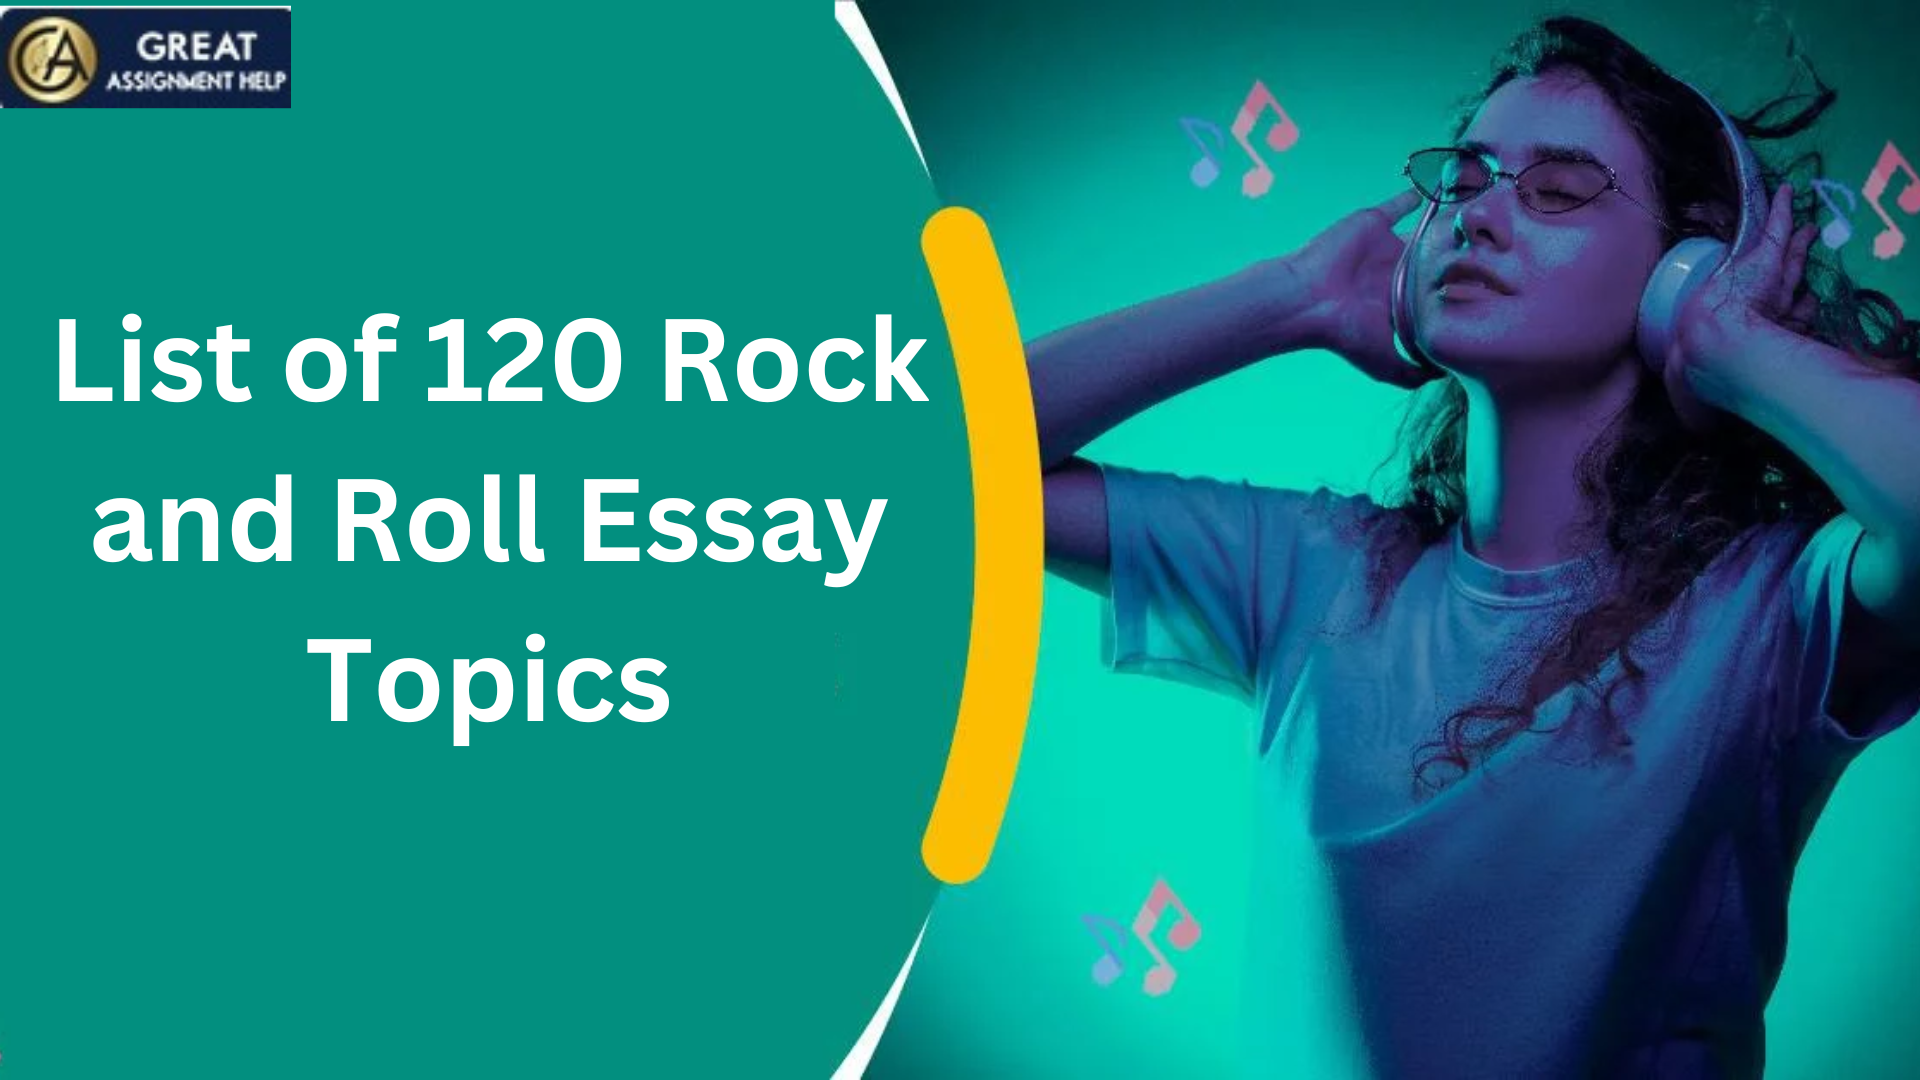 Rock and Roll Essay Topics